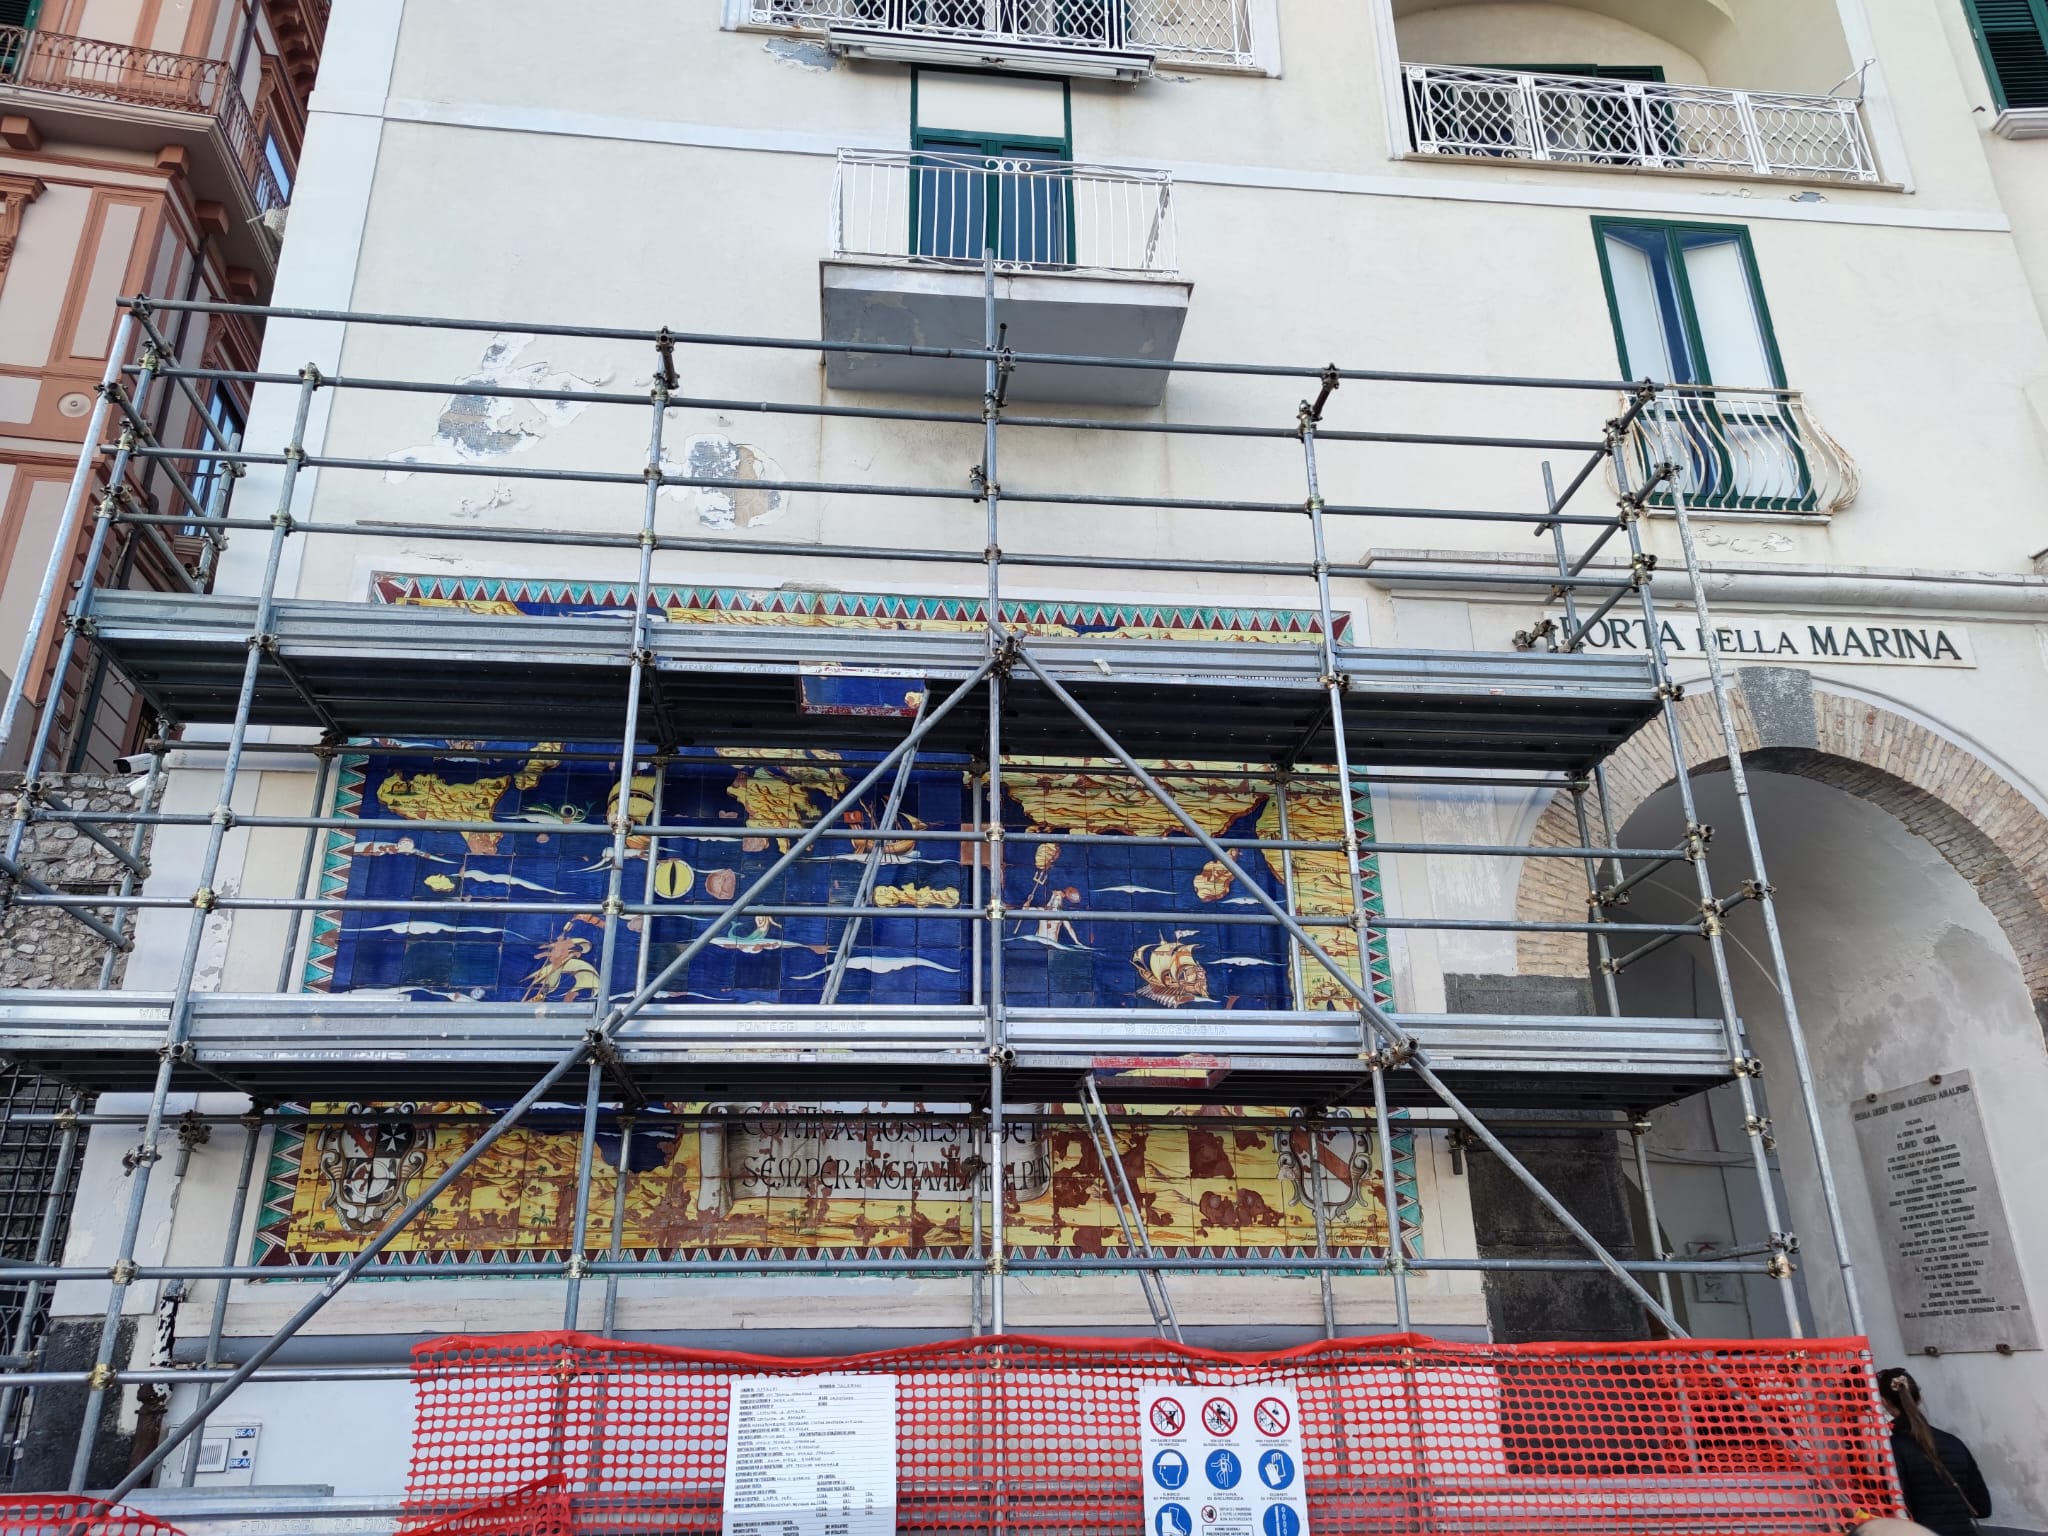 Amalfi: al via restauro a pannello maiolicato della Porta della Marina